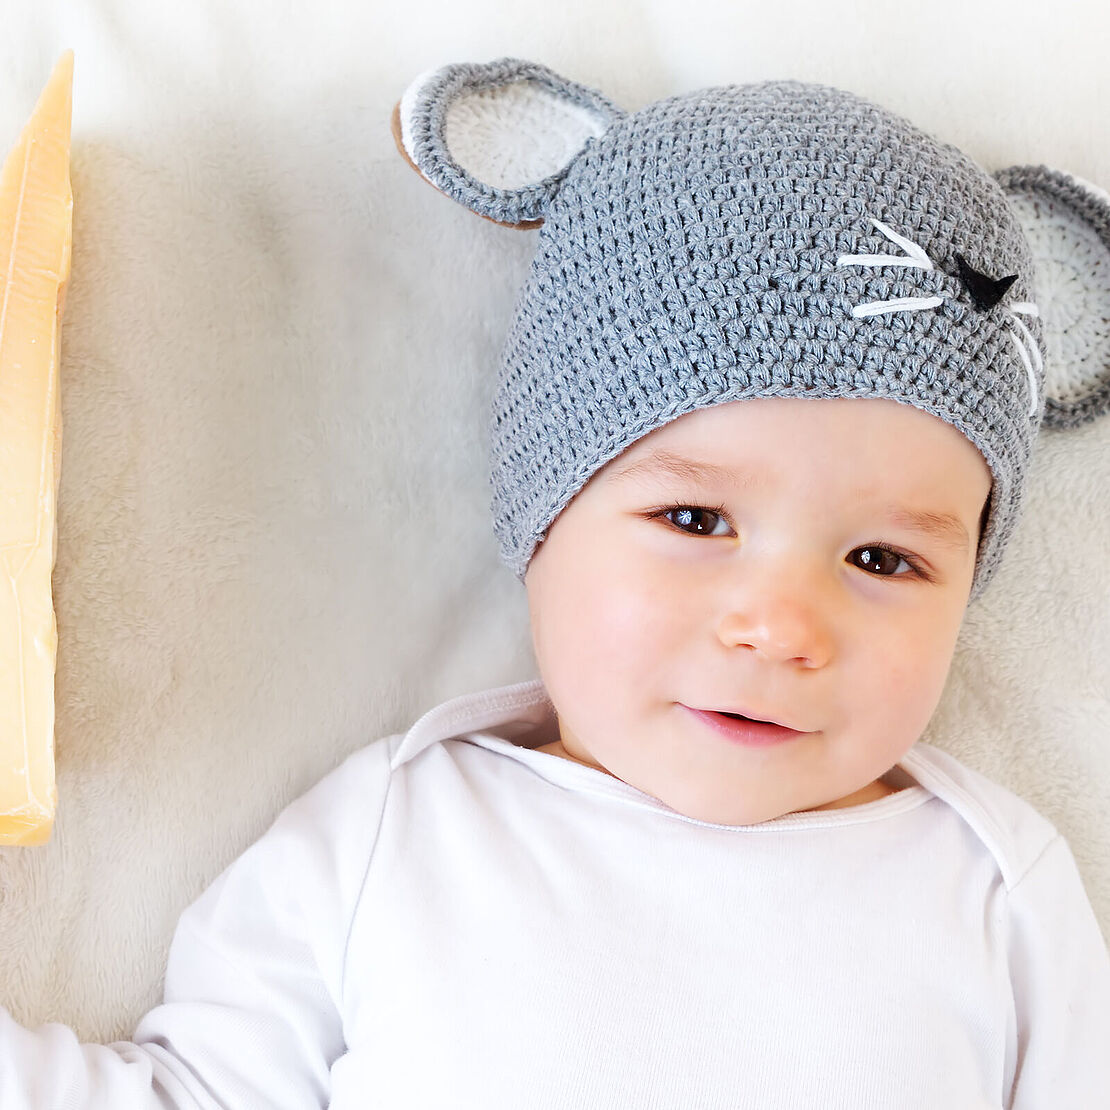 Ernährung von Babys – Schöne Ideen, um Käse Babys schmackhaft zu machen